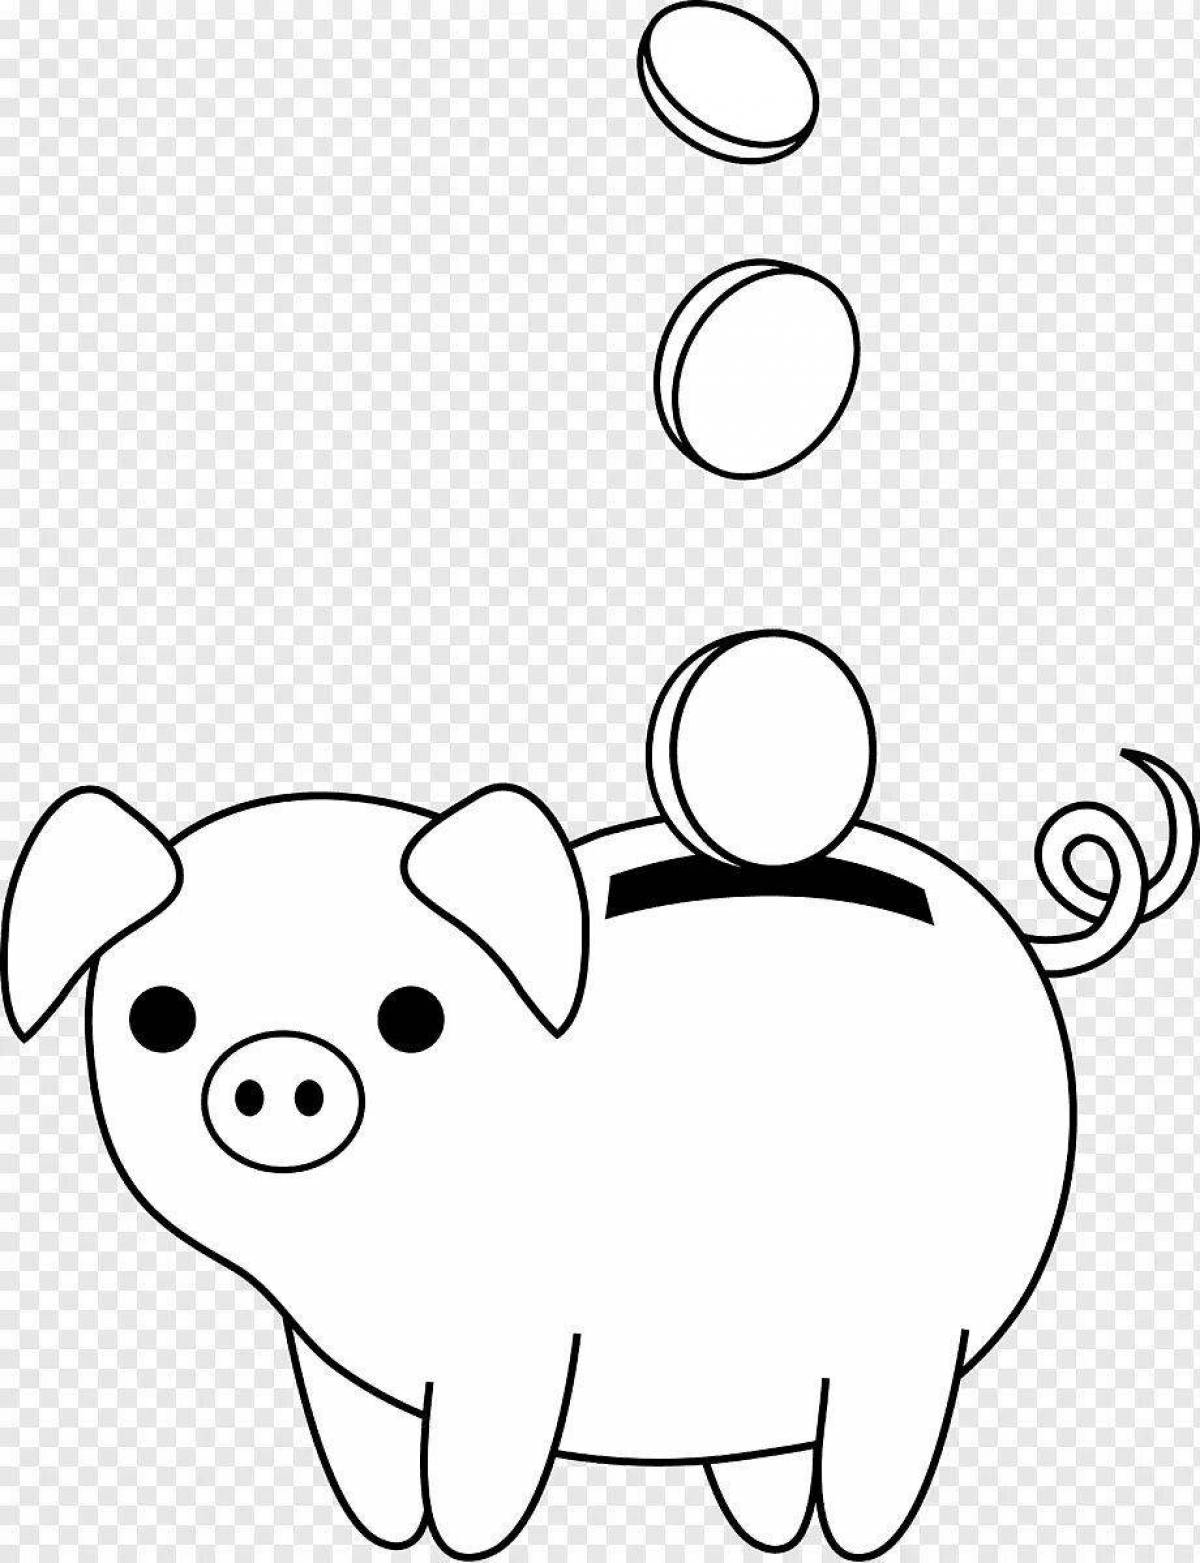 Piggy bank for kids #1